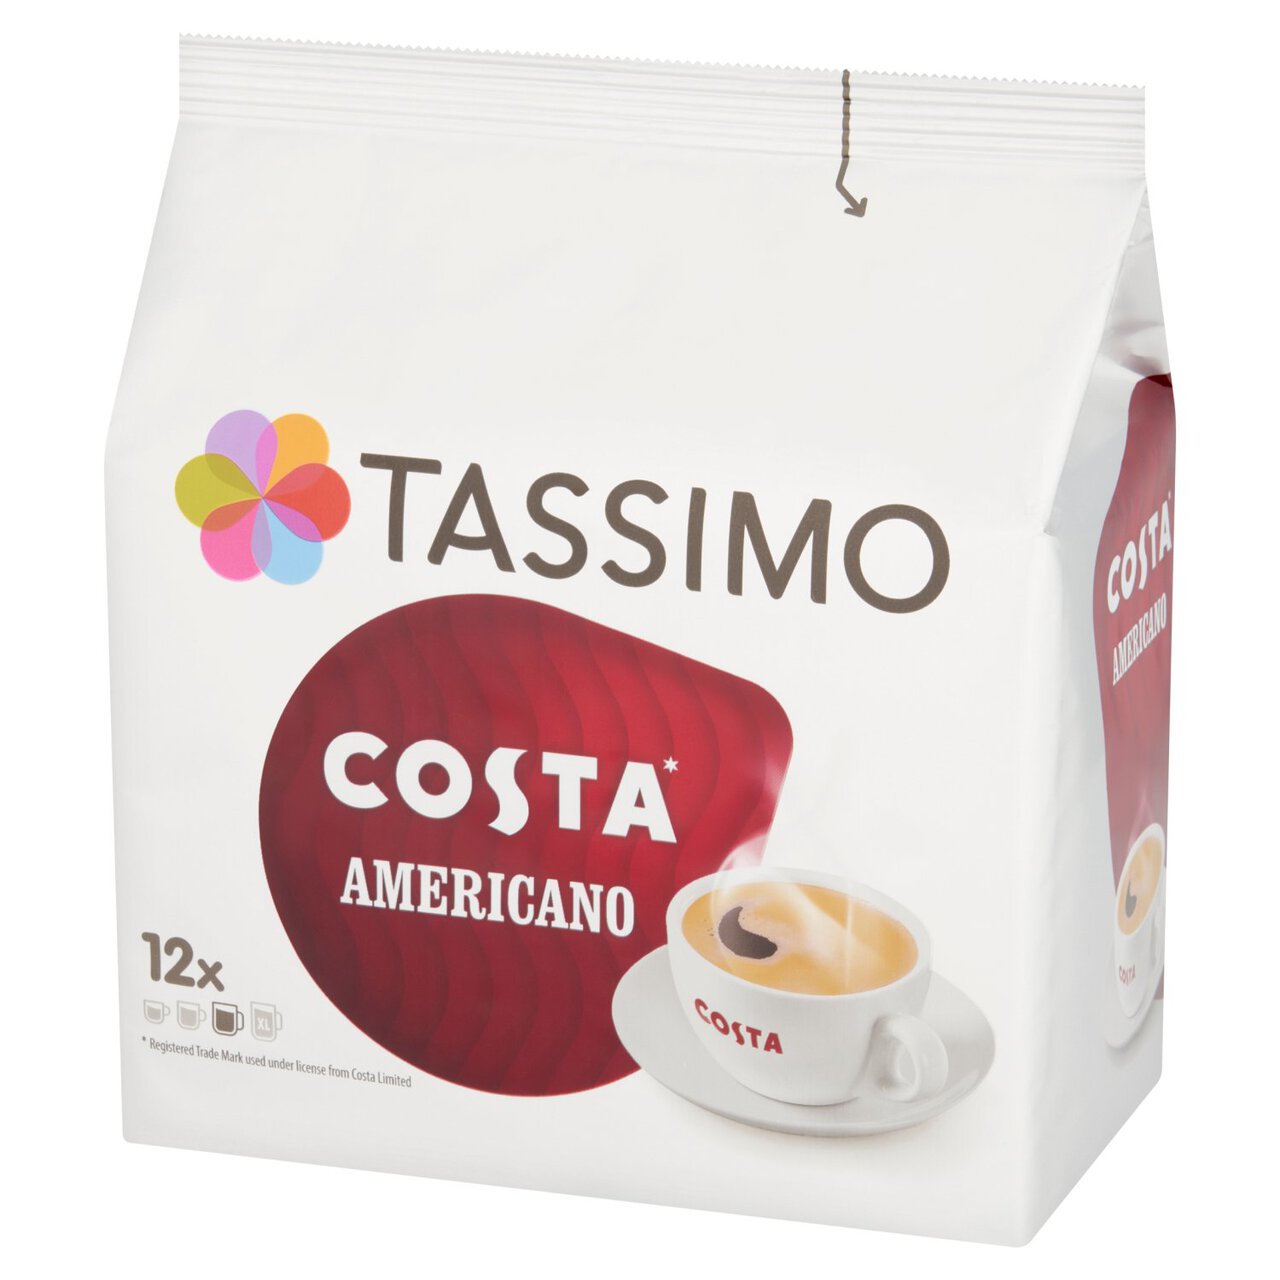 Tassimo Costa Americano Coffee Pods 12 per pack